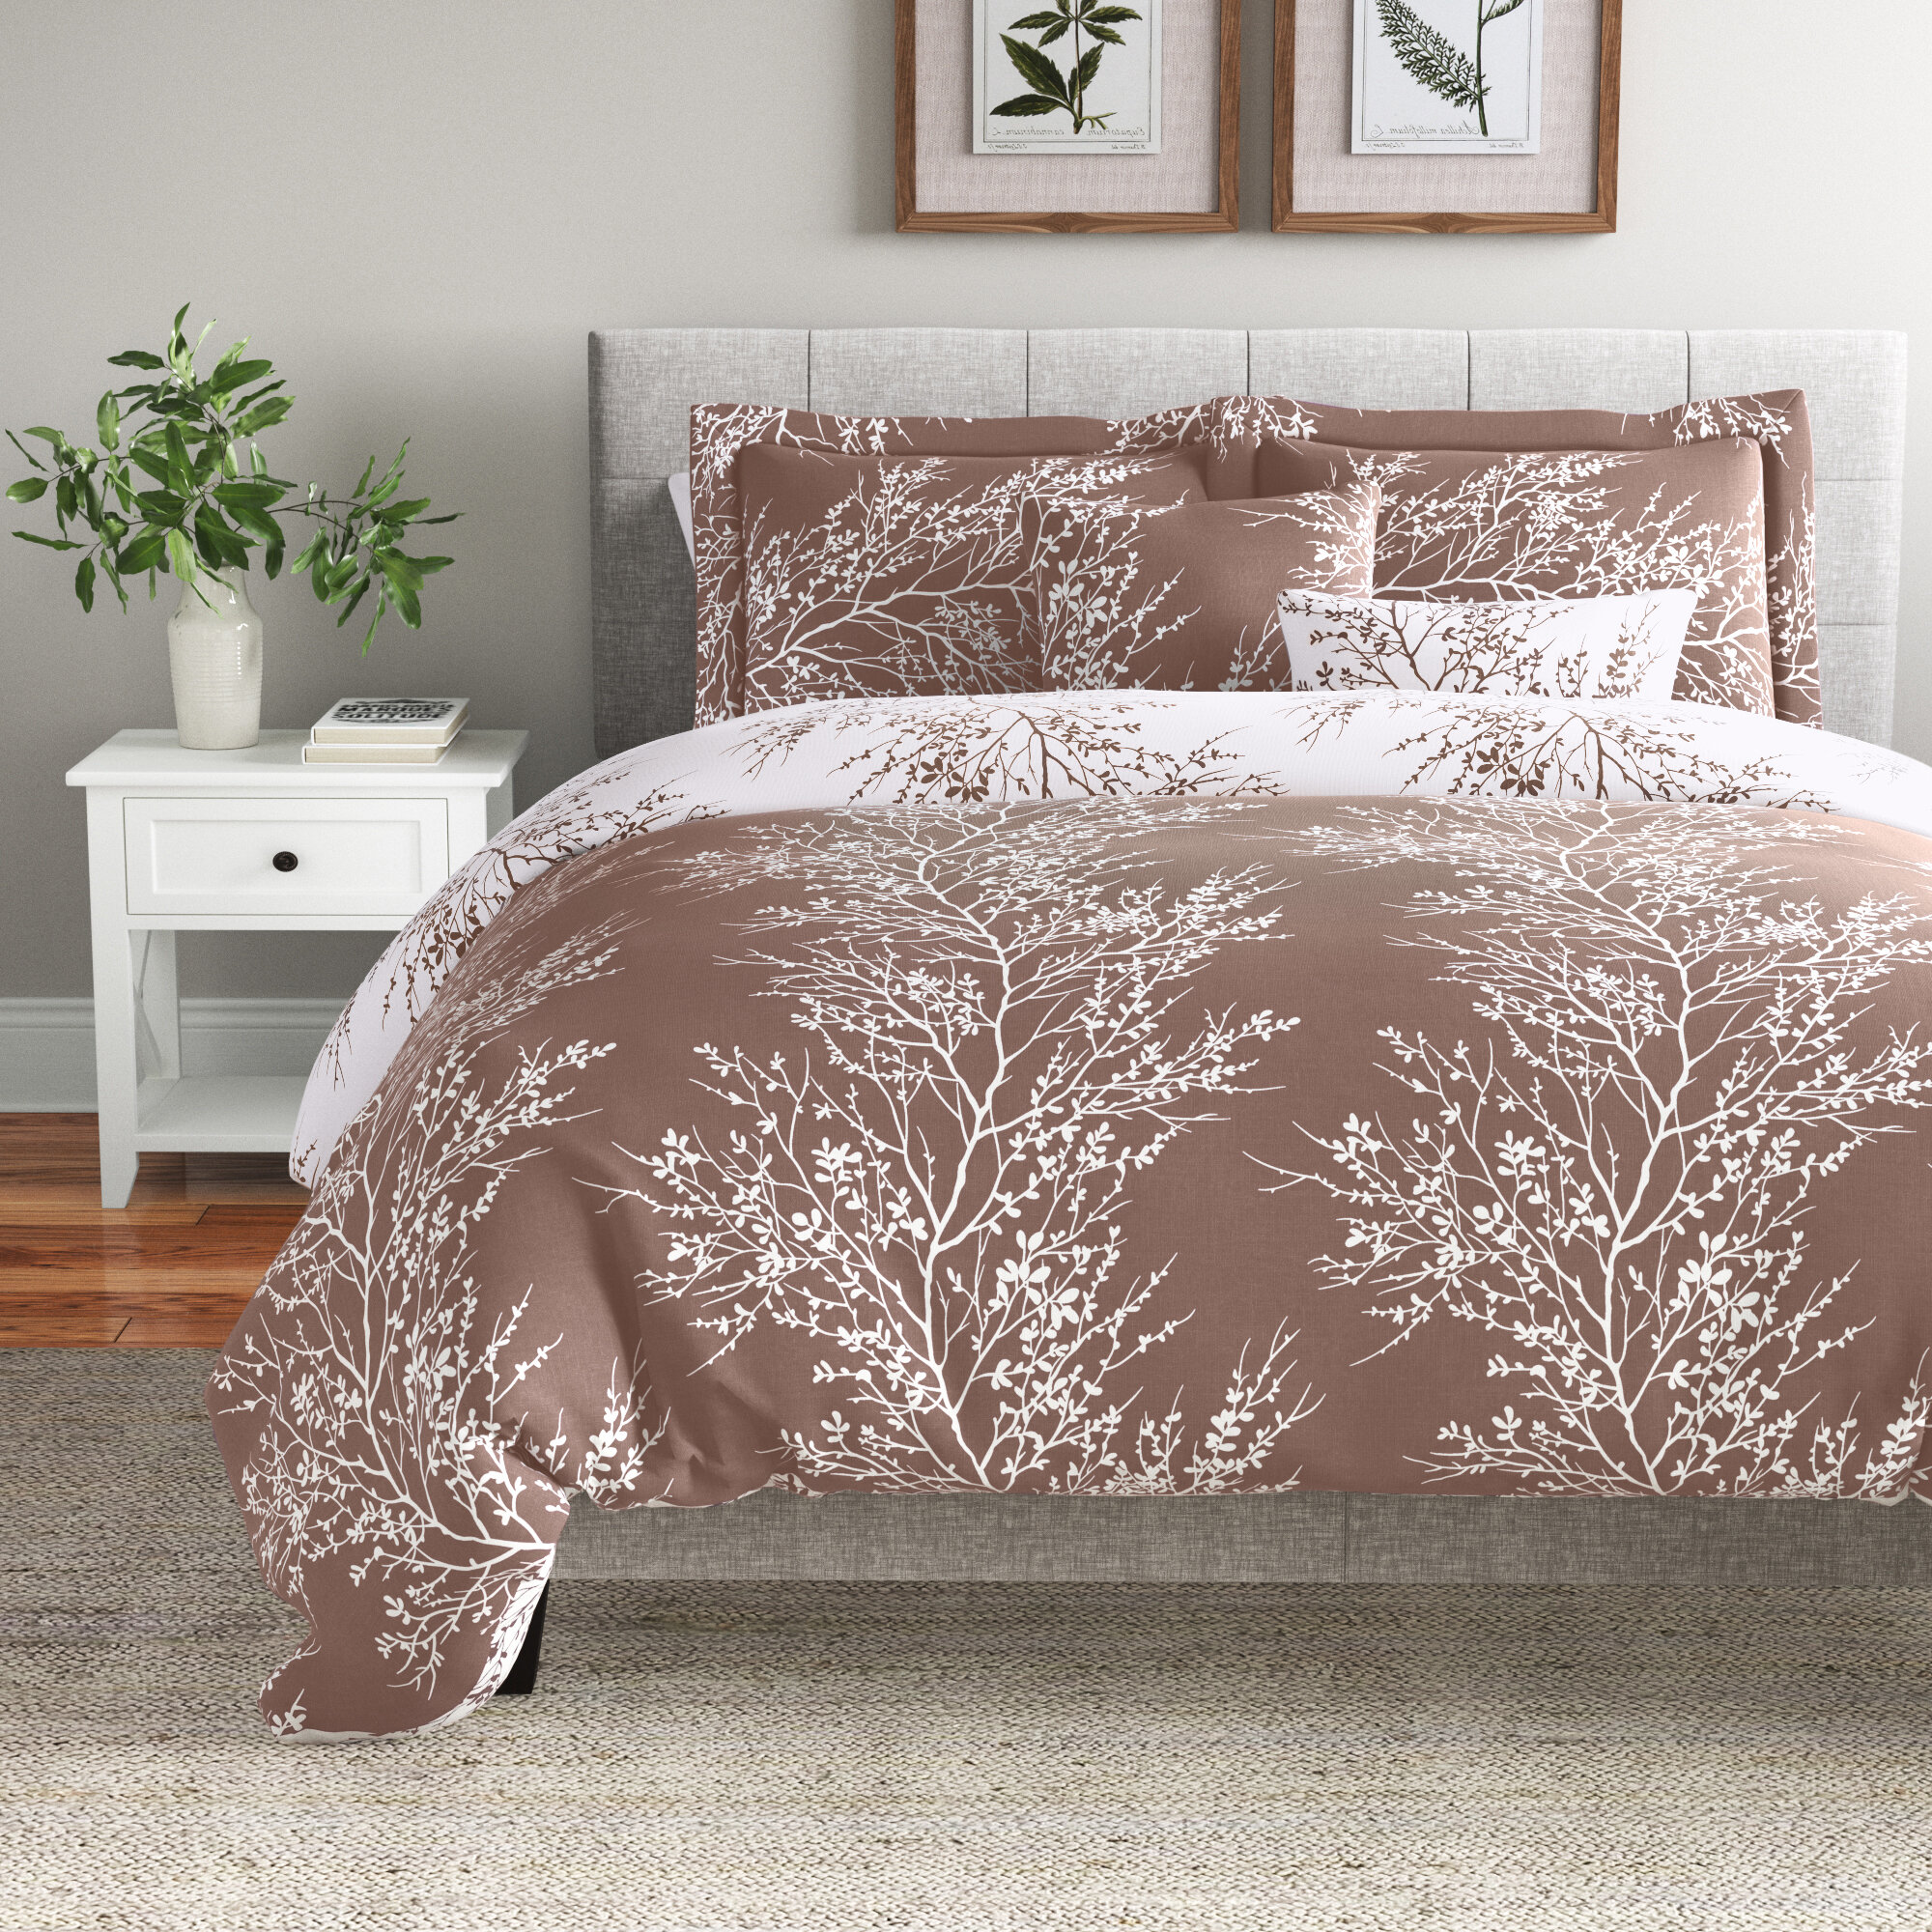 Ravelry: Gentle Moss Blanket pattern by Cindy Edmonds